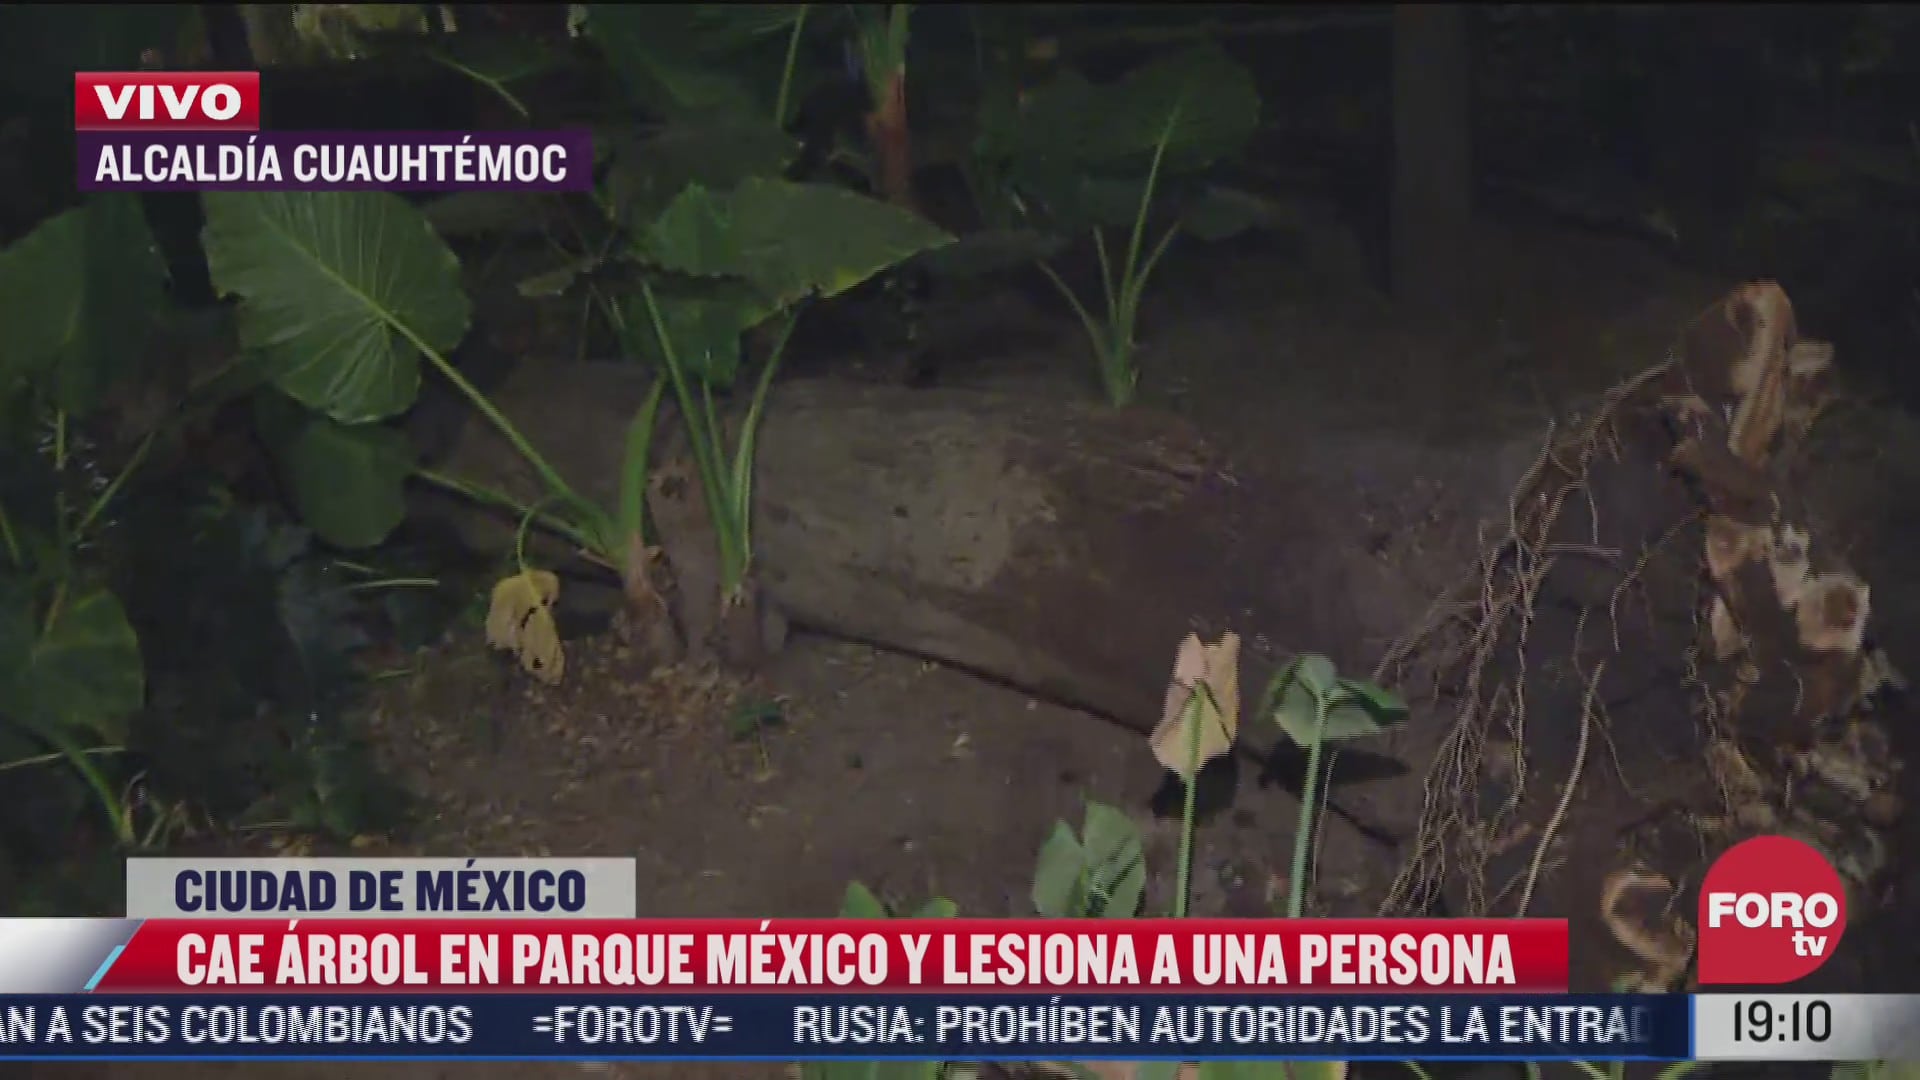 cae arbol en parque mexico y lesiona a una persona